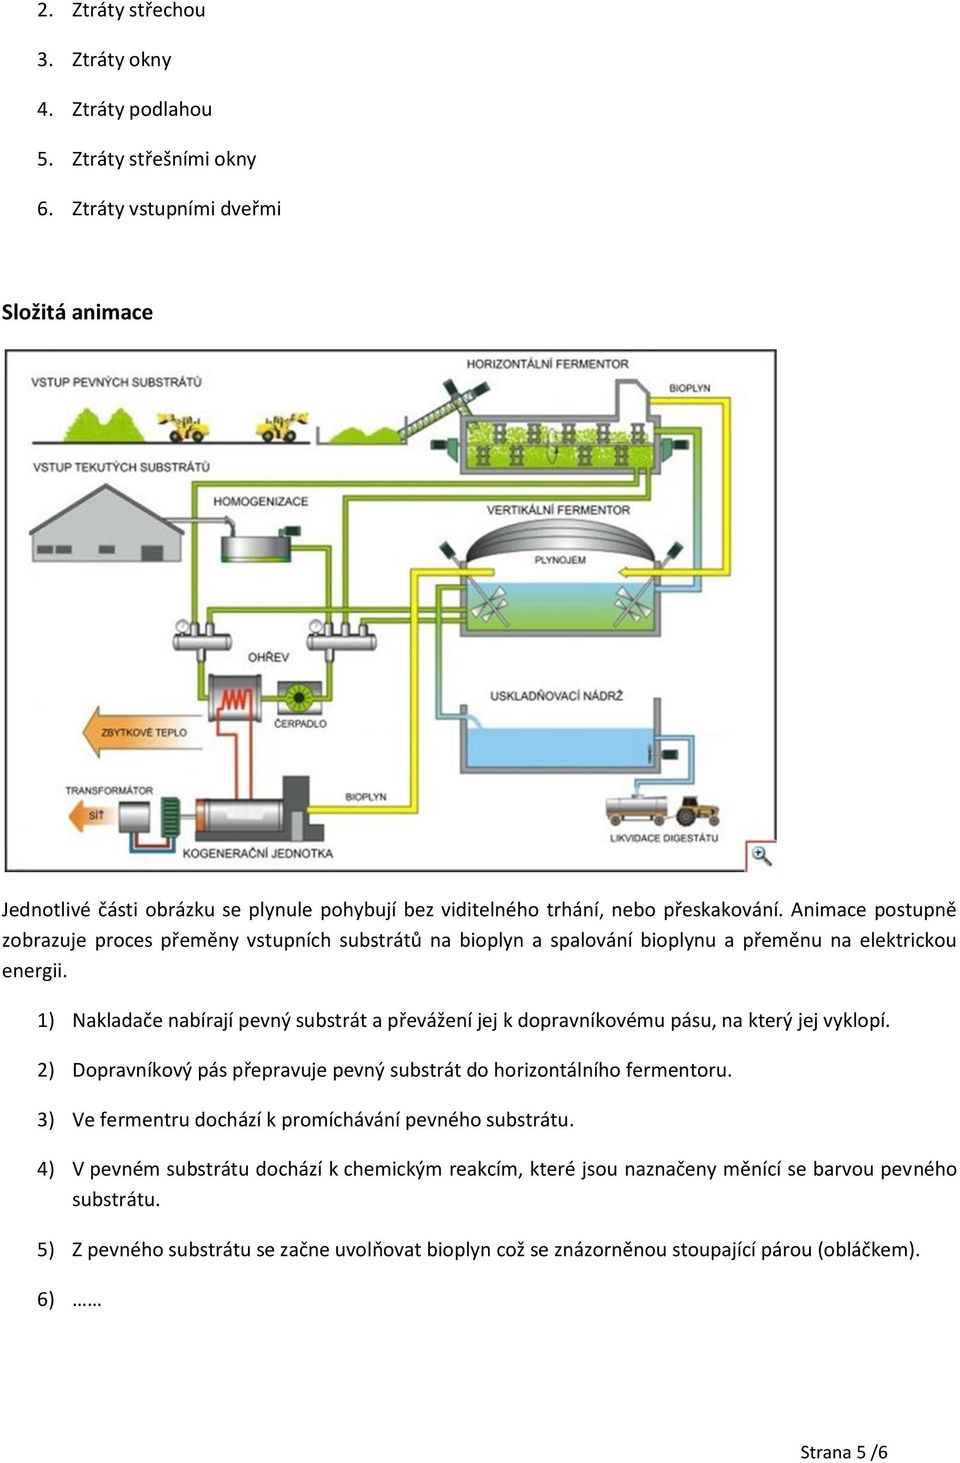 Animace postupně zobrazuje proces přeměny vstupních substrátů na bioplyn a spalování bioplynu a přeměnu na elektrickou energii.